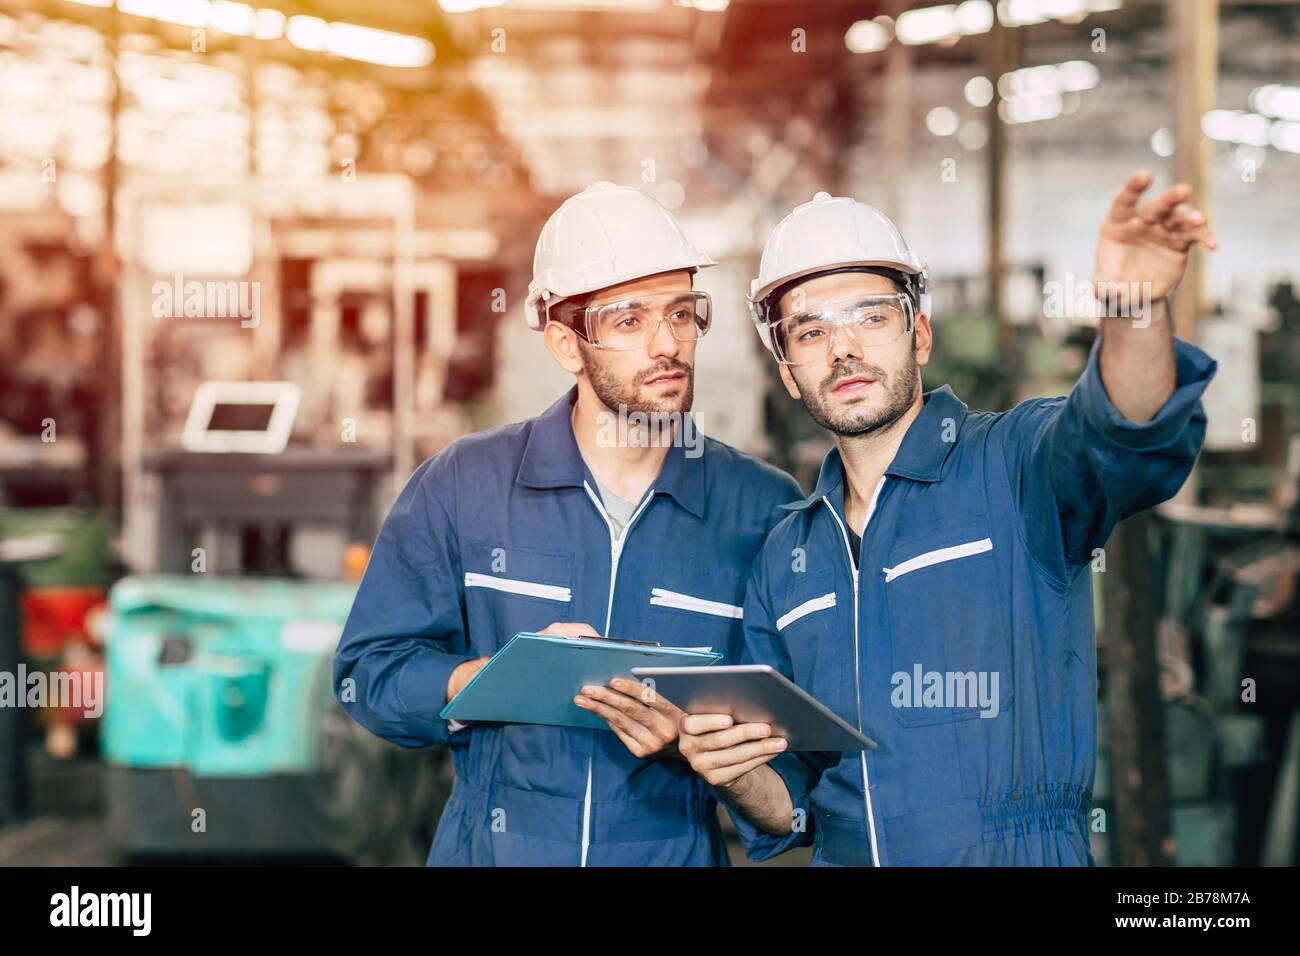 Zwei Techniker arbeiten zusammen mit Sicherheitsuniform und weißem Helm, um in der Industrie zu arbeiten, die Werkstafel zu handhaben. Stockfoto